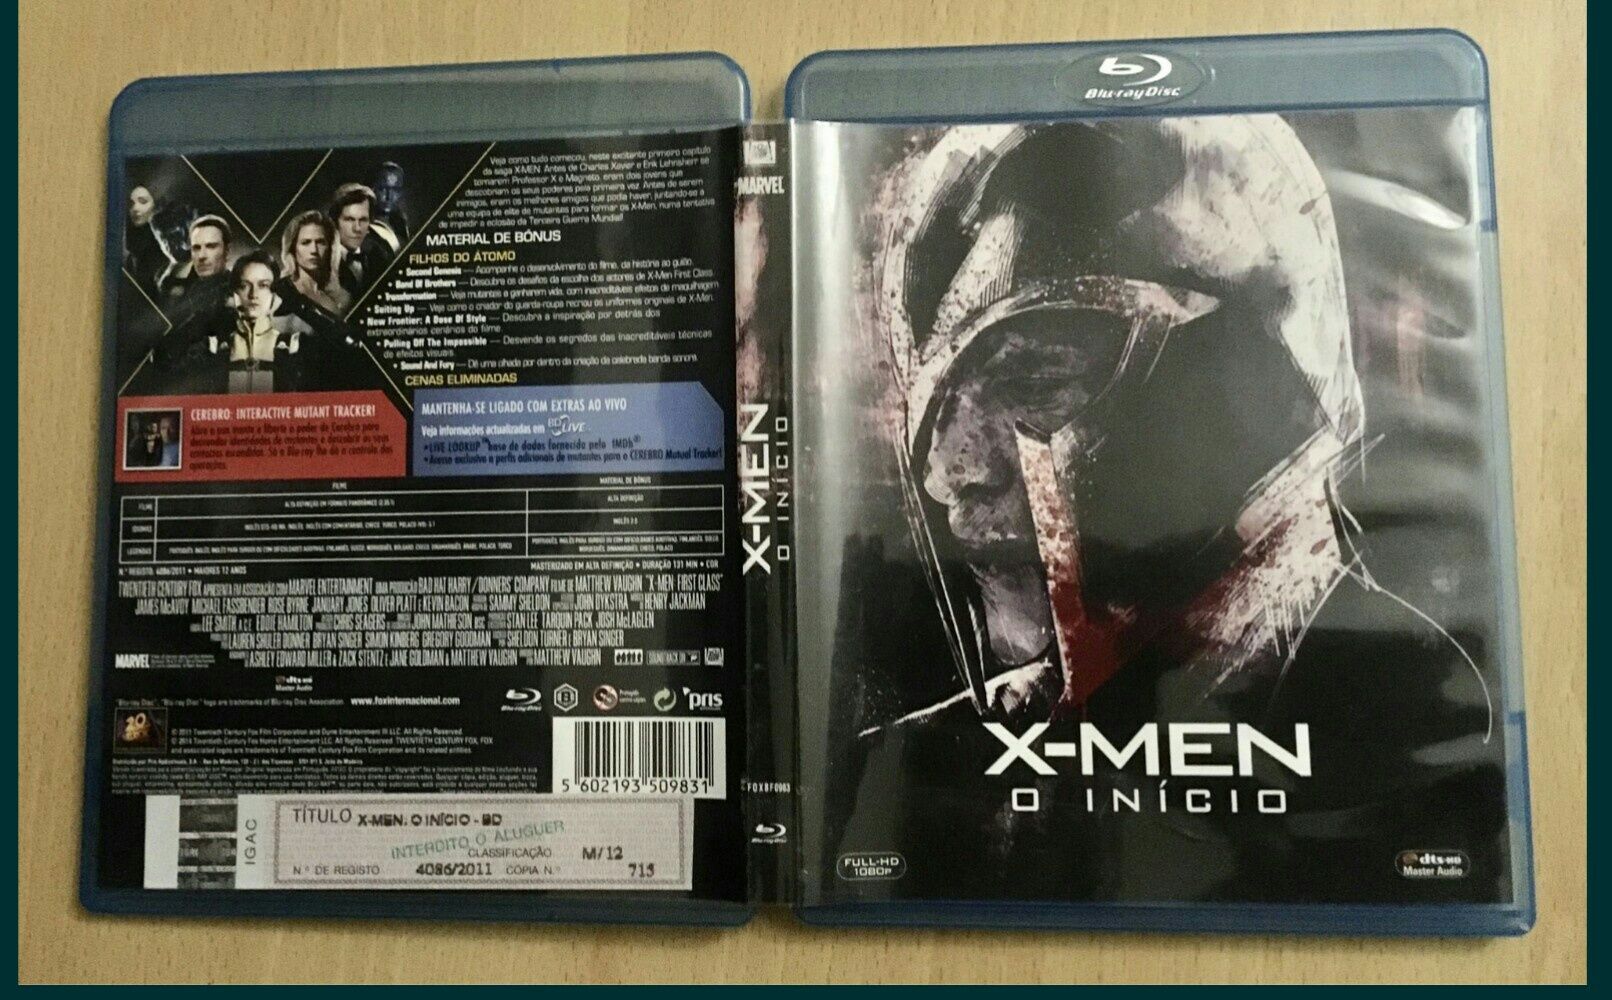 X- Men o Inicio Blu-ray ESPECIAL DTS-HD MA - Legendas PT selo IGAC (Portes CTT GRÁTIS)